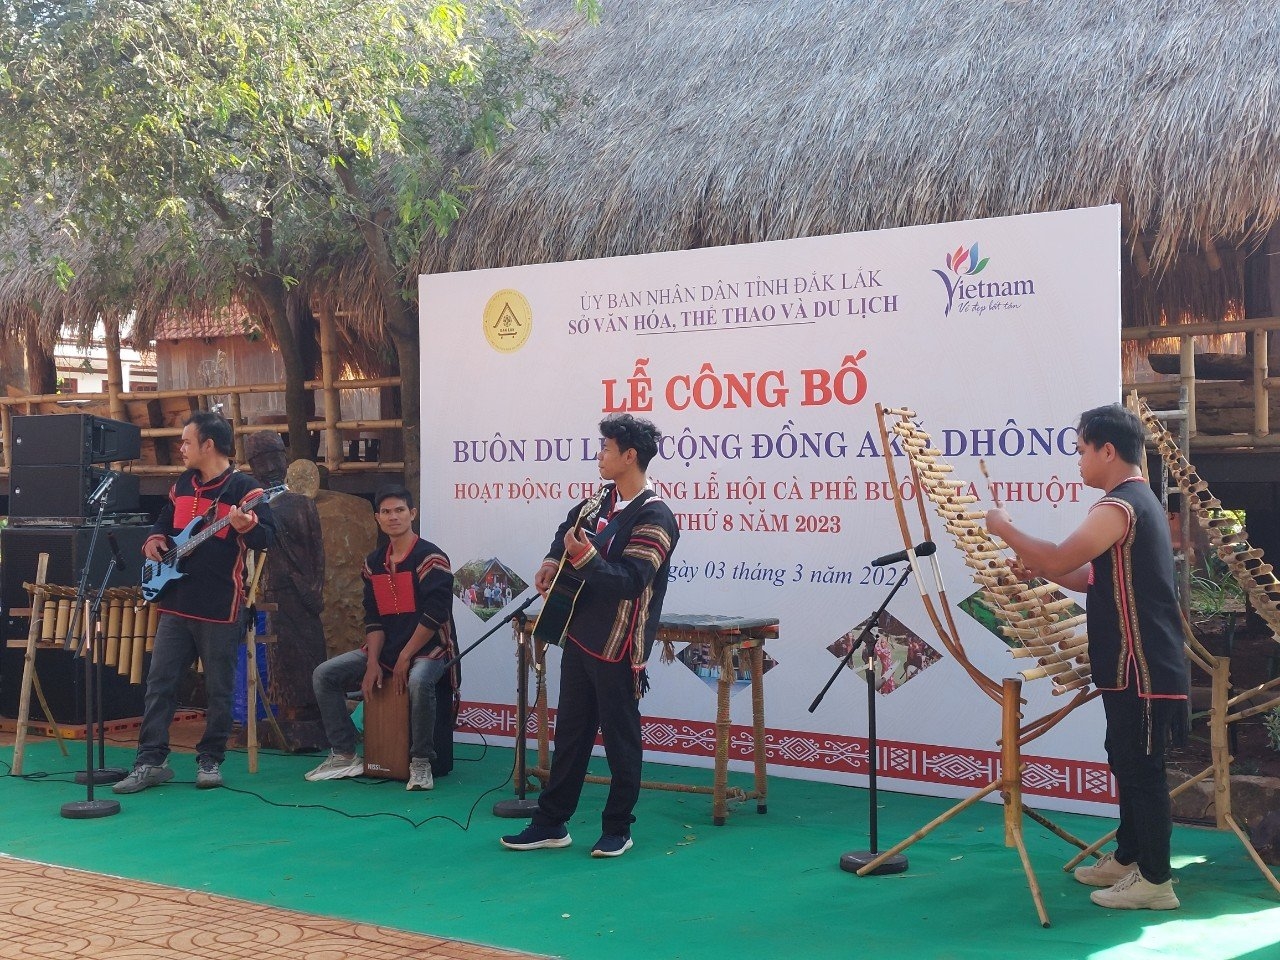 Vừa qua, buôn Ako Dhong được công nhận là buôn du lịch cộng đồng đầu tiên của tỉnh Đắk Lắk